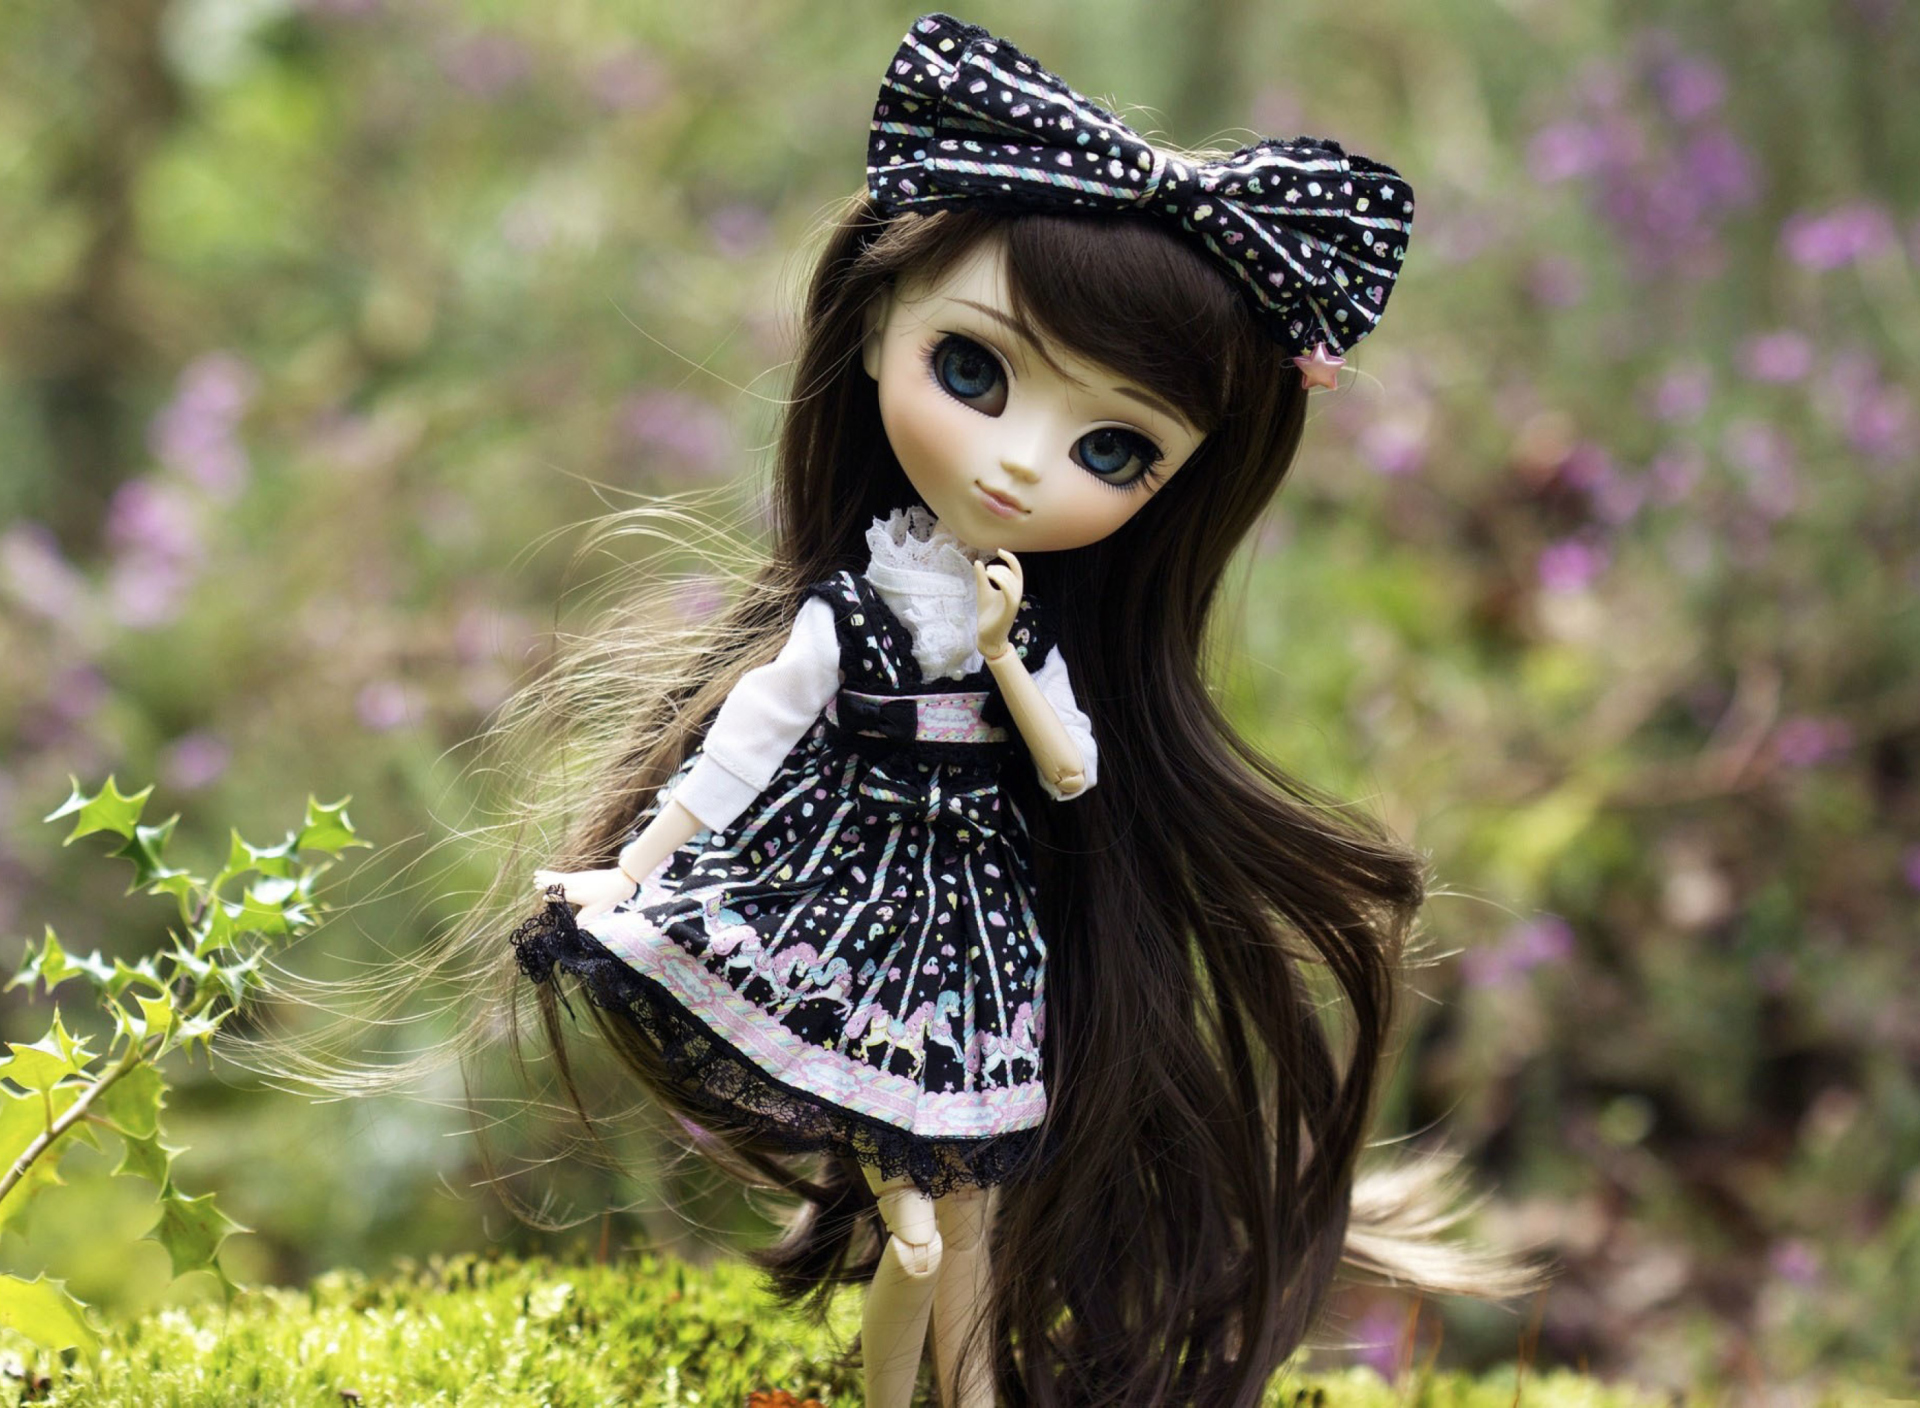 Обои Cute Doll With Dark Hair And Black Bow 1920x1408